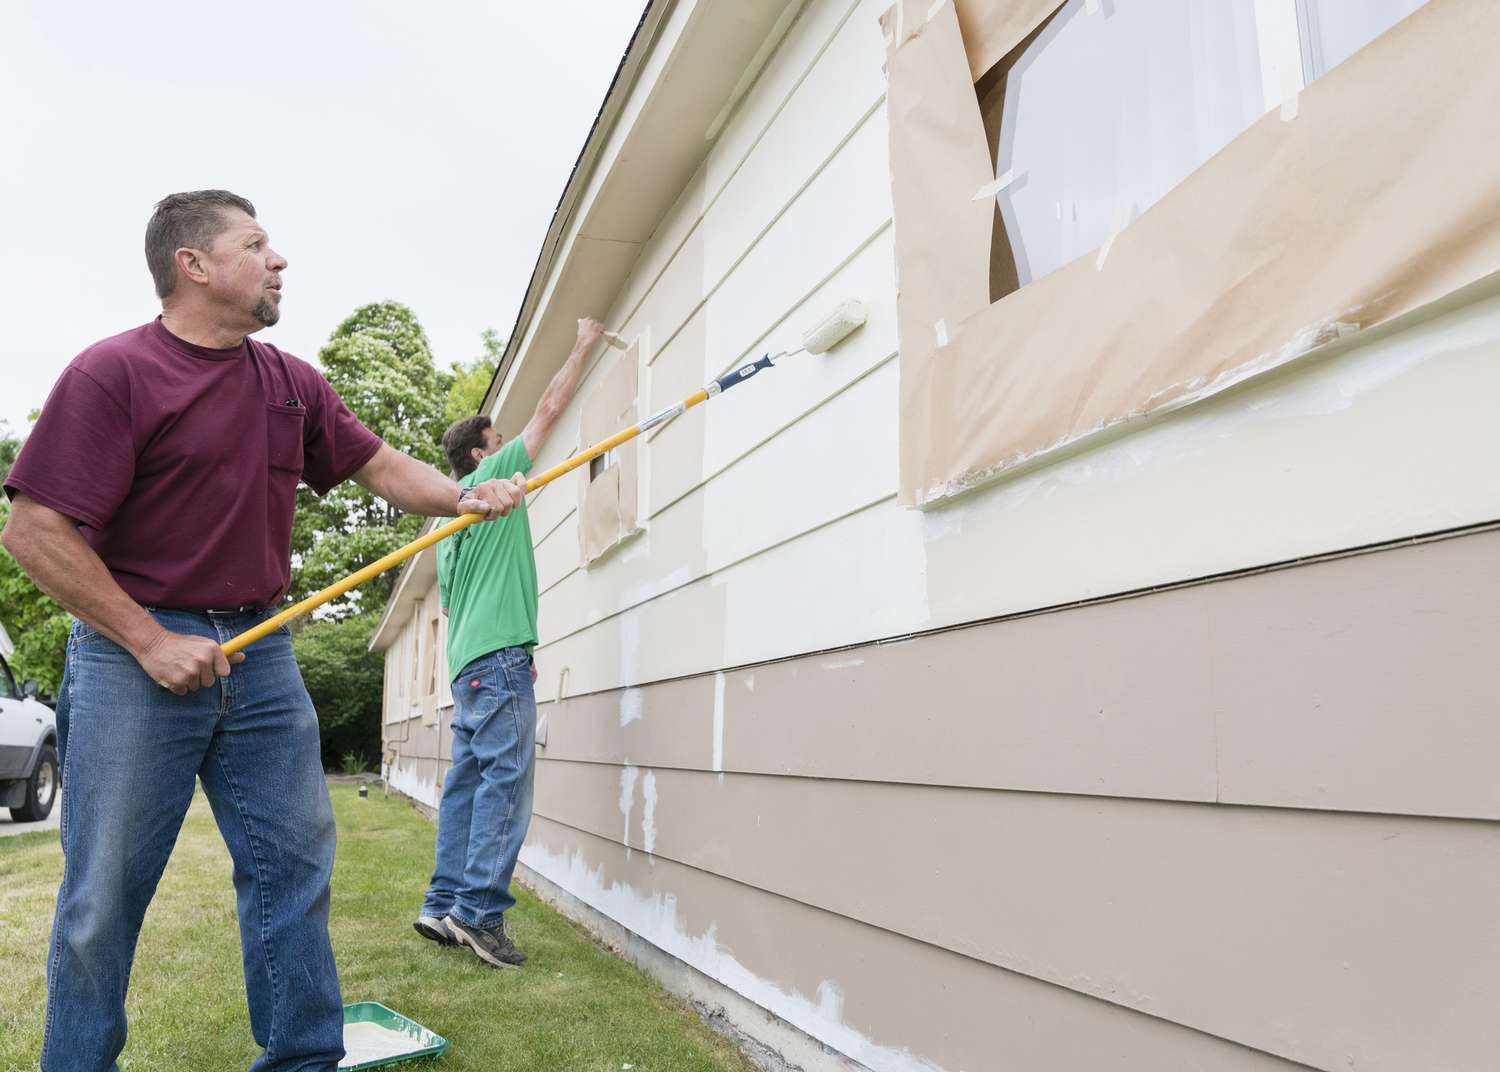 Cuánto cuesta pintar el exterior de una casa?